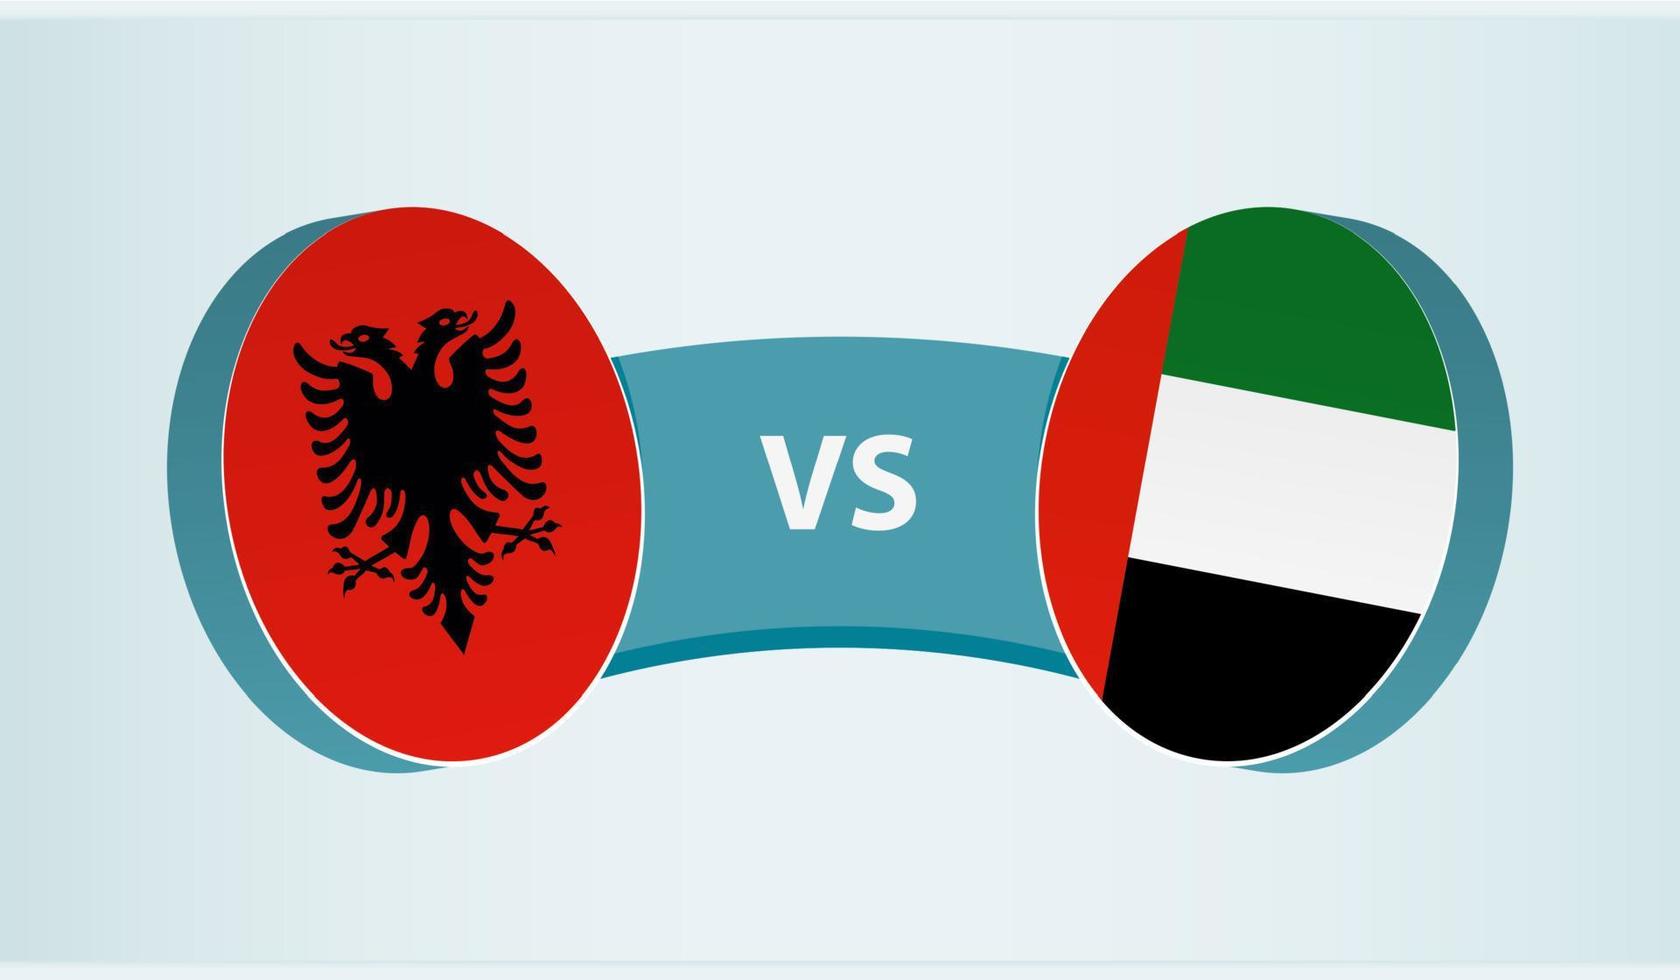 Albania versus United Arab Emirates, team sports competition concept. vector